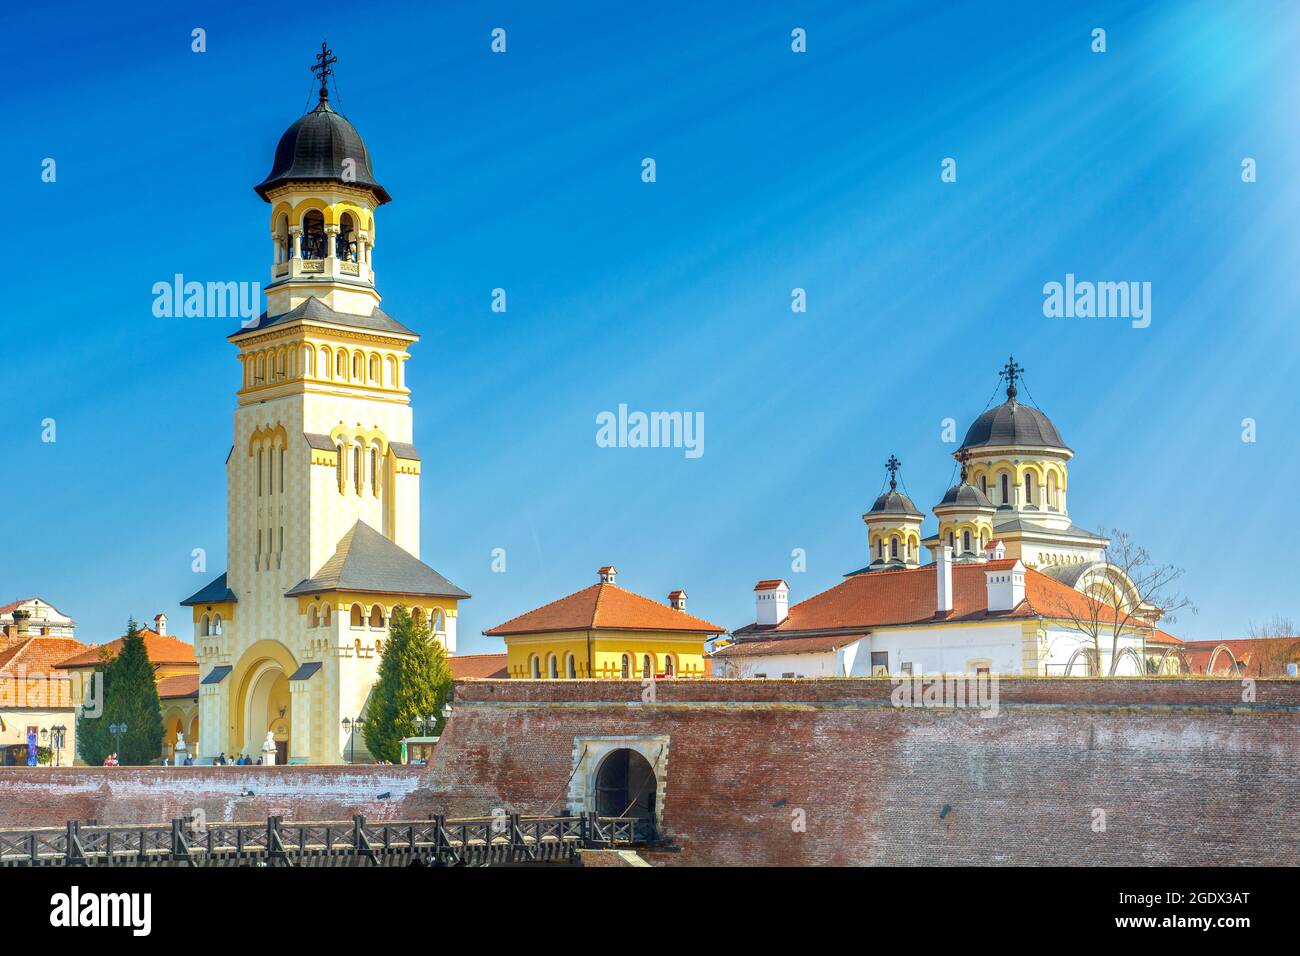 Alba Iulia Stadt in Siebenbürgen, Rumänien, Stadtbild mit orthoox und katholischen Kathedralentürmen Stockfoto